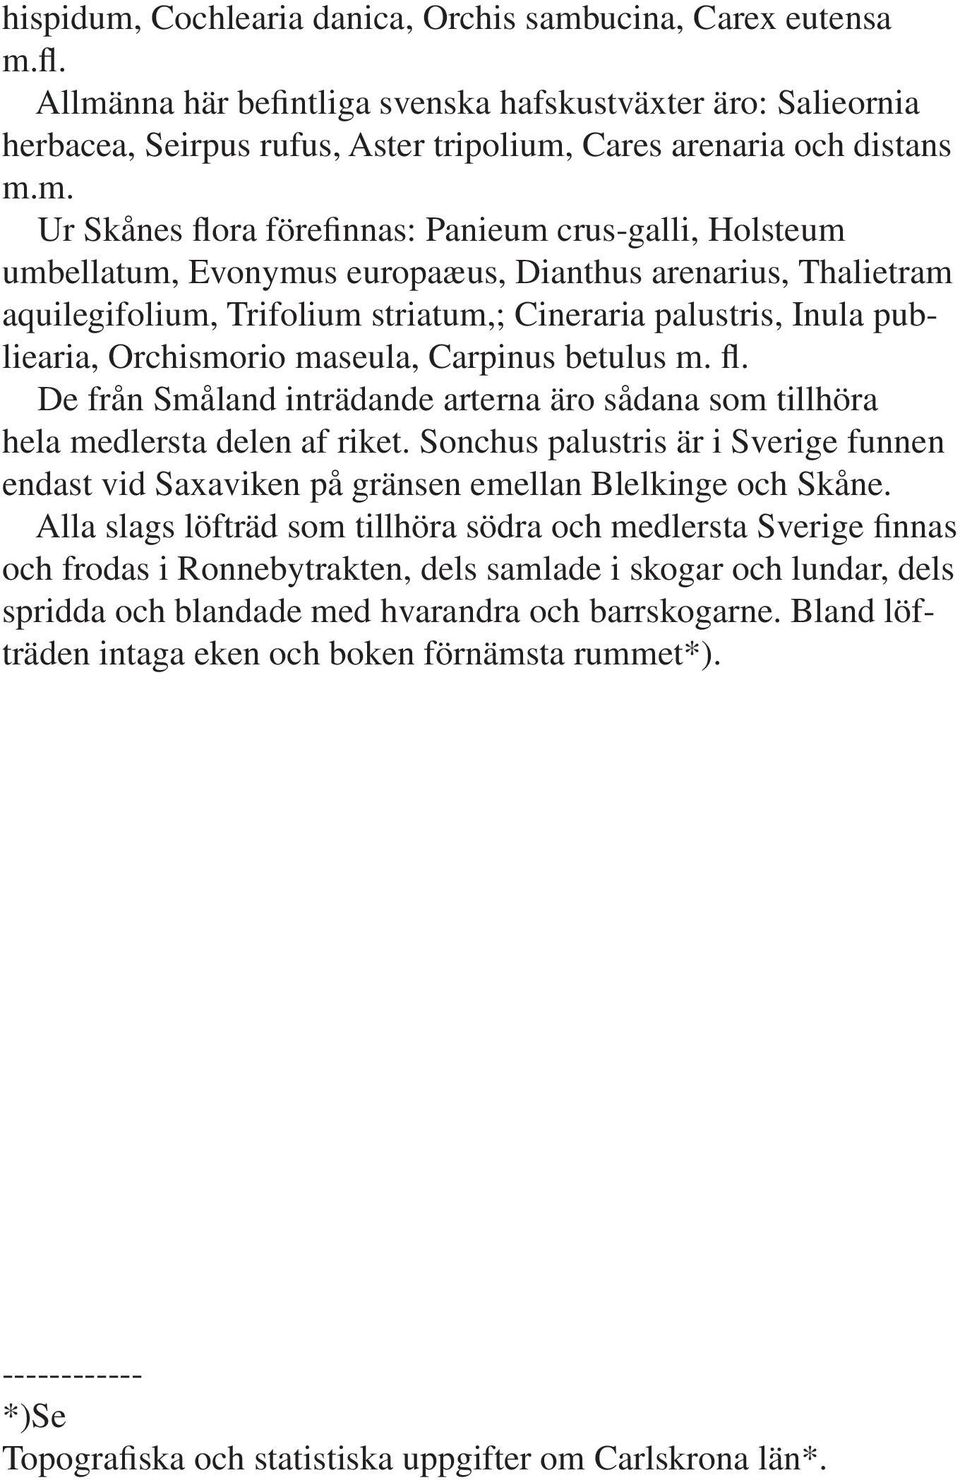 umbellatum, Evonymus europaæus, Dianthus arenarius, Thalietram aquilegifolium, Trifolium striatum,; Cineraria palustris, Inula publiearia, Orchismorio maseula, Carpinus betulus m. fl.